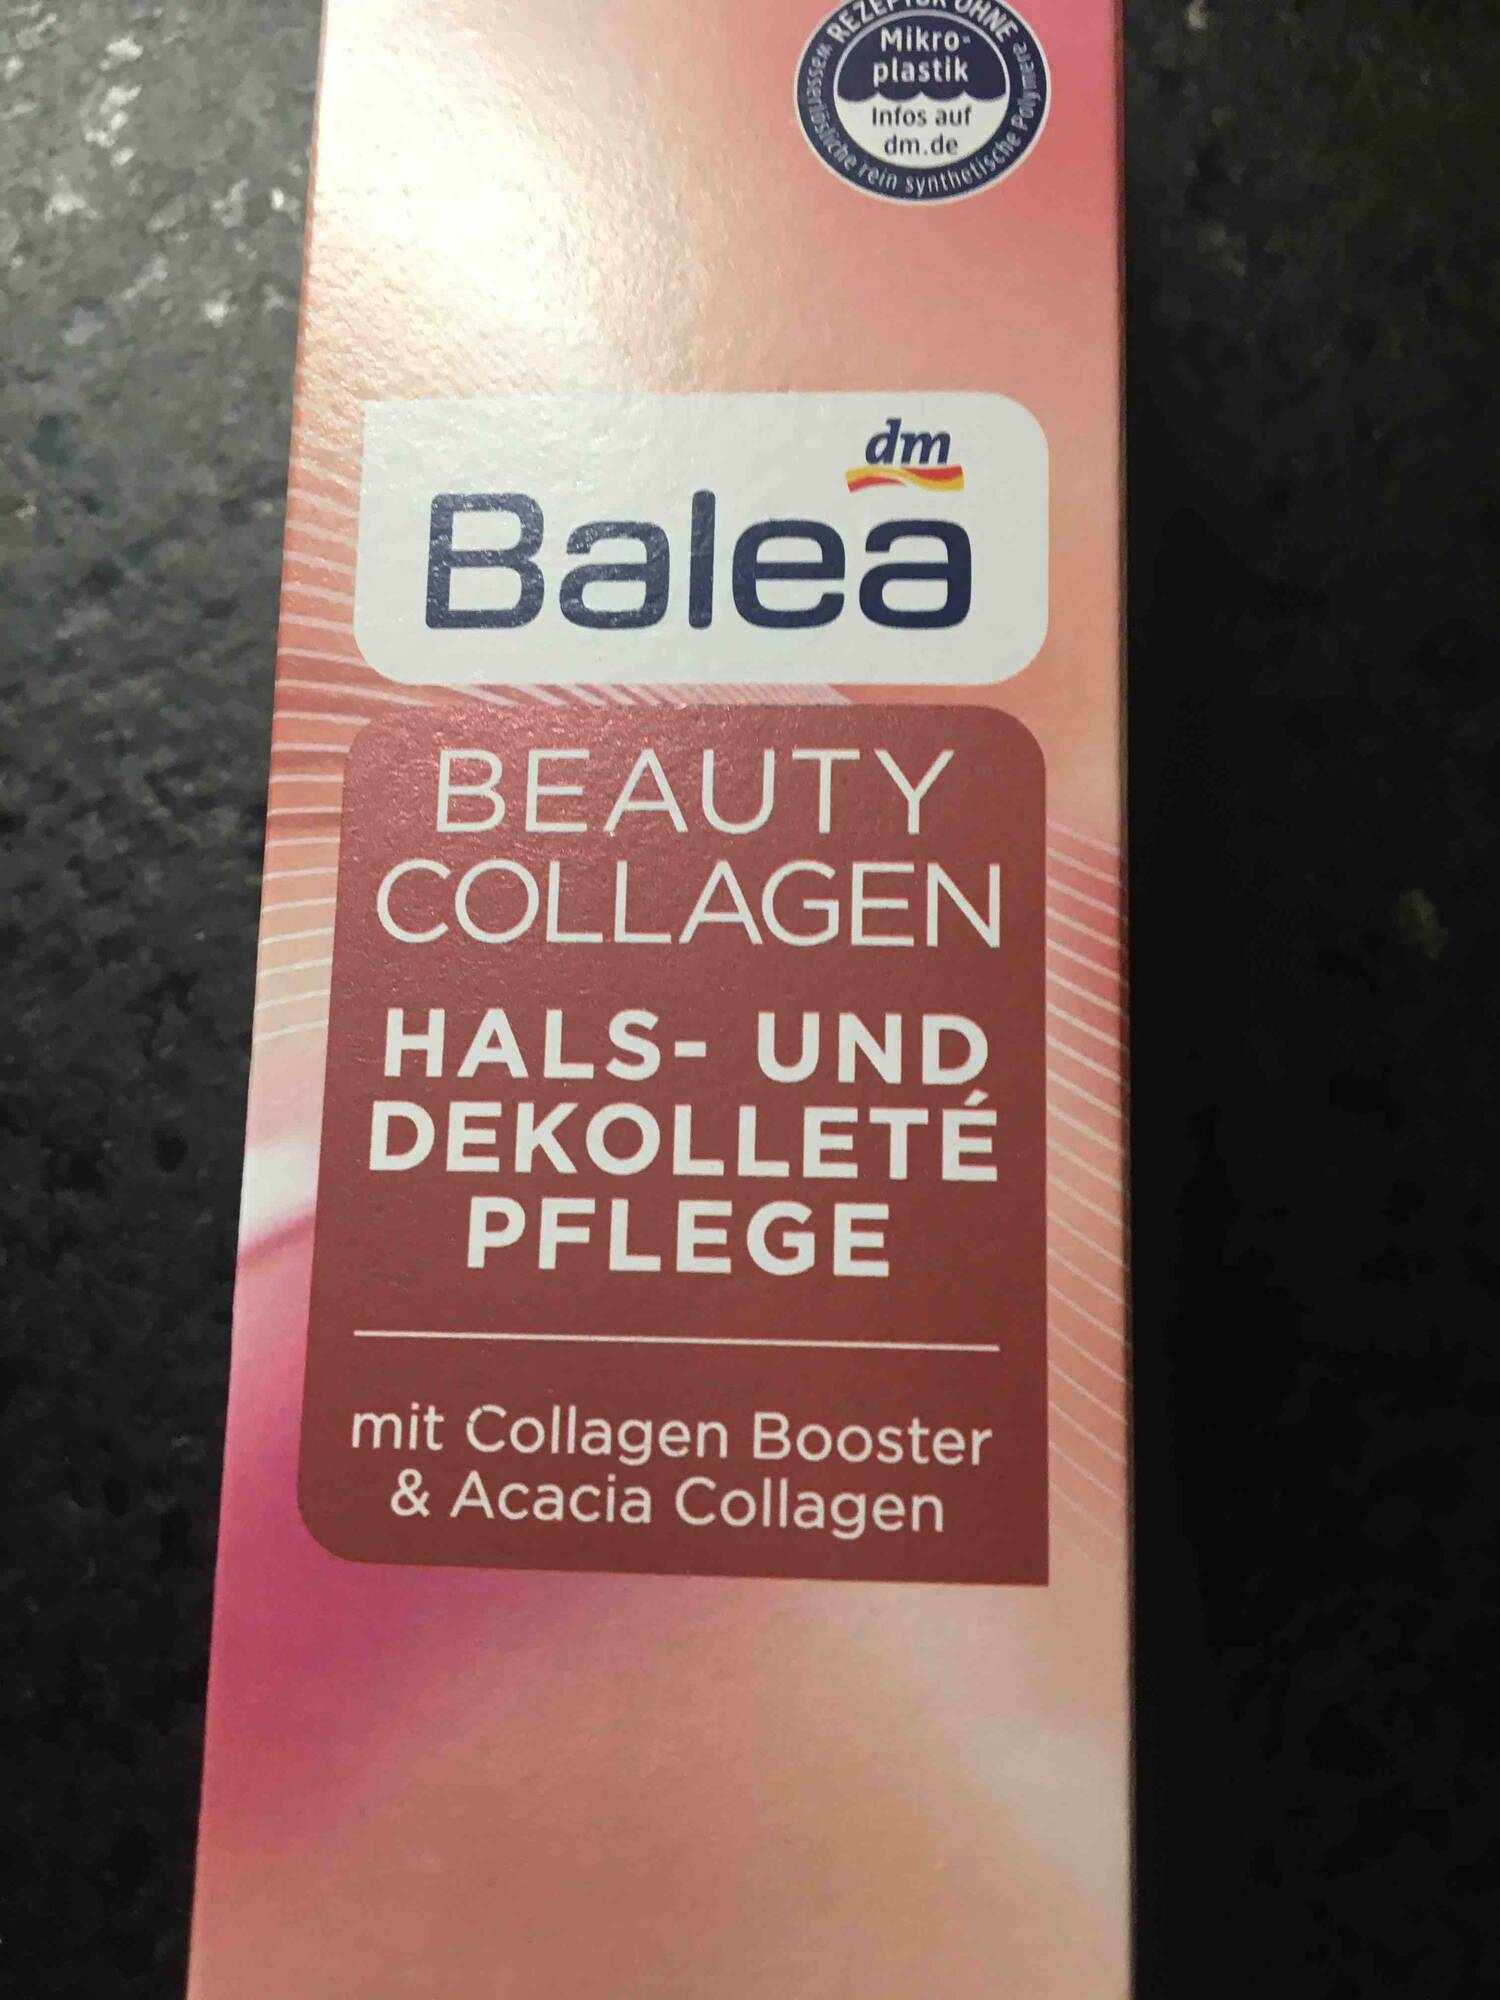 BALEA - Beauty collagen - Hals und dekolleté pflege